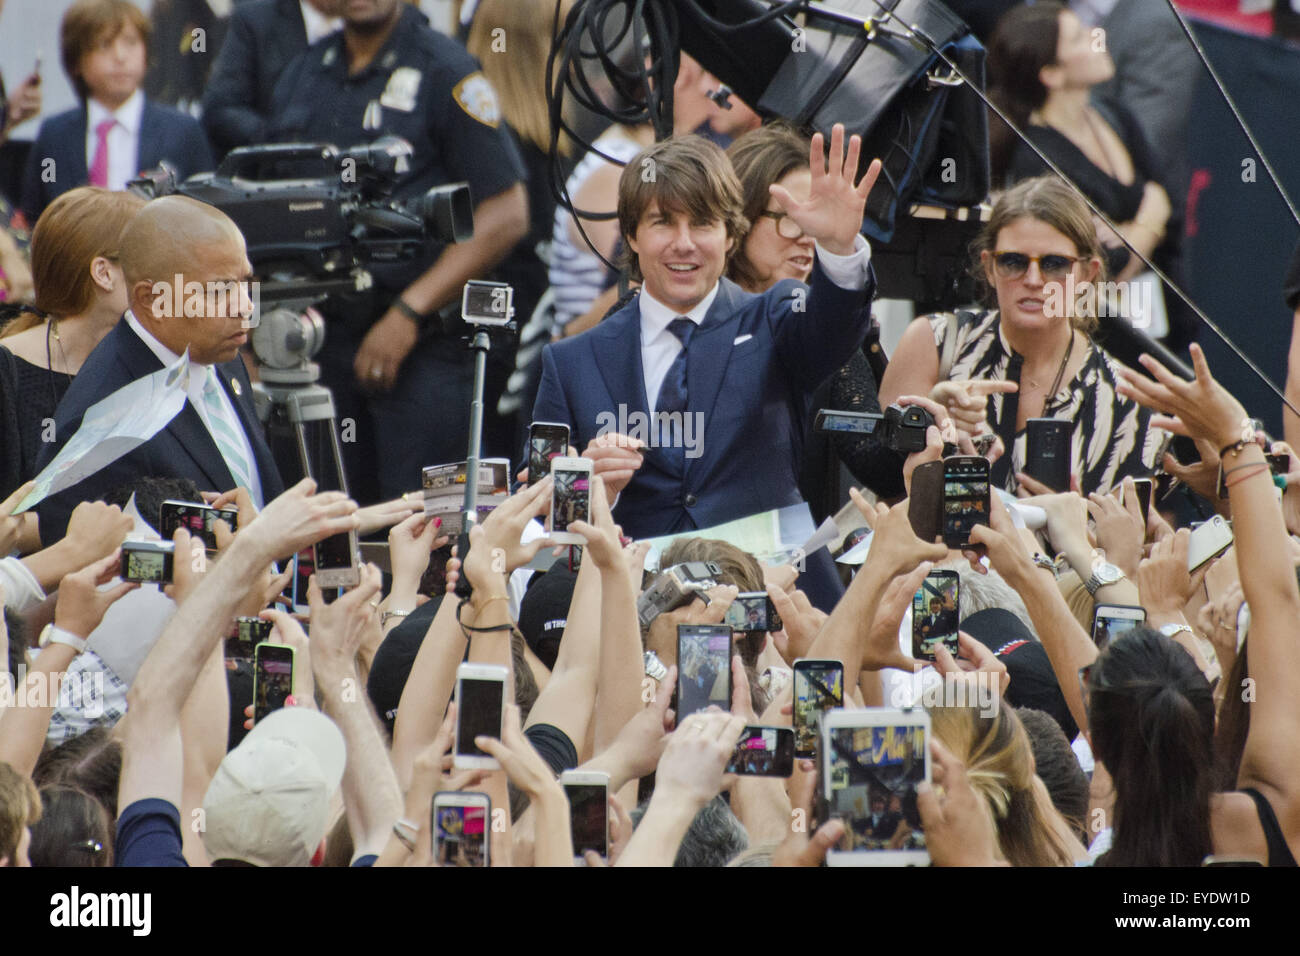 New York, USA. 27 juillet, 2015. Tom Cruise à vagues les fans au cours de Mission Impossible : État voyou Premiere à New York à Times Square, New York City. Credit : Sumit Shrestha/ZUMA/Alamy Fil Live News Banque D'Images